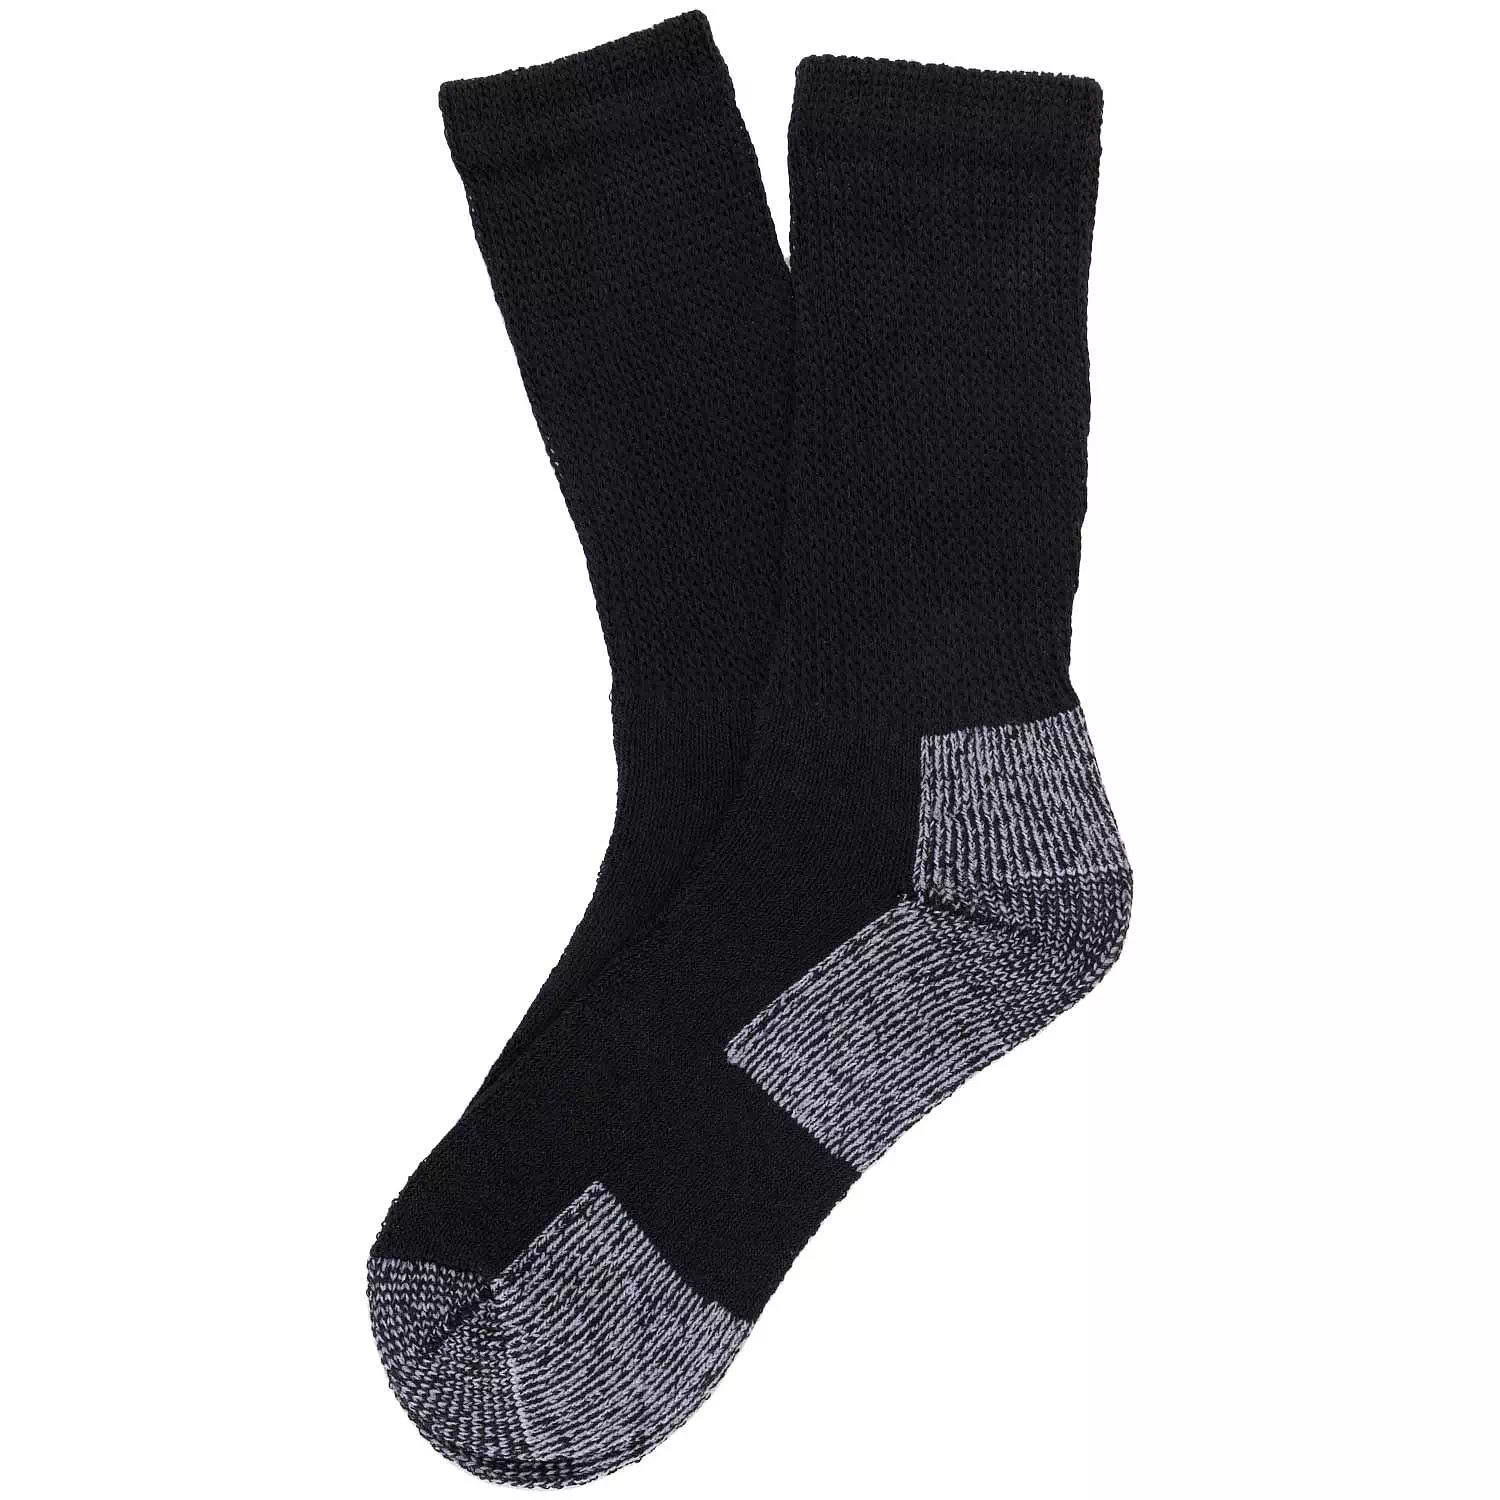 Buy WearJukebox Ankle Grip Socks Black (Pack of 2) Online